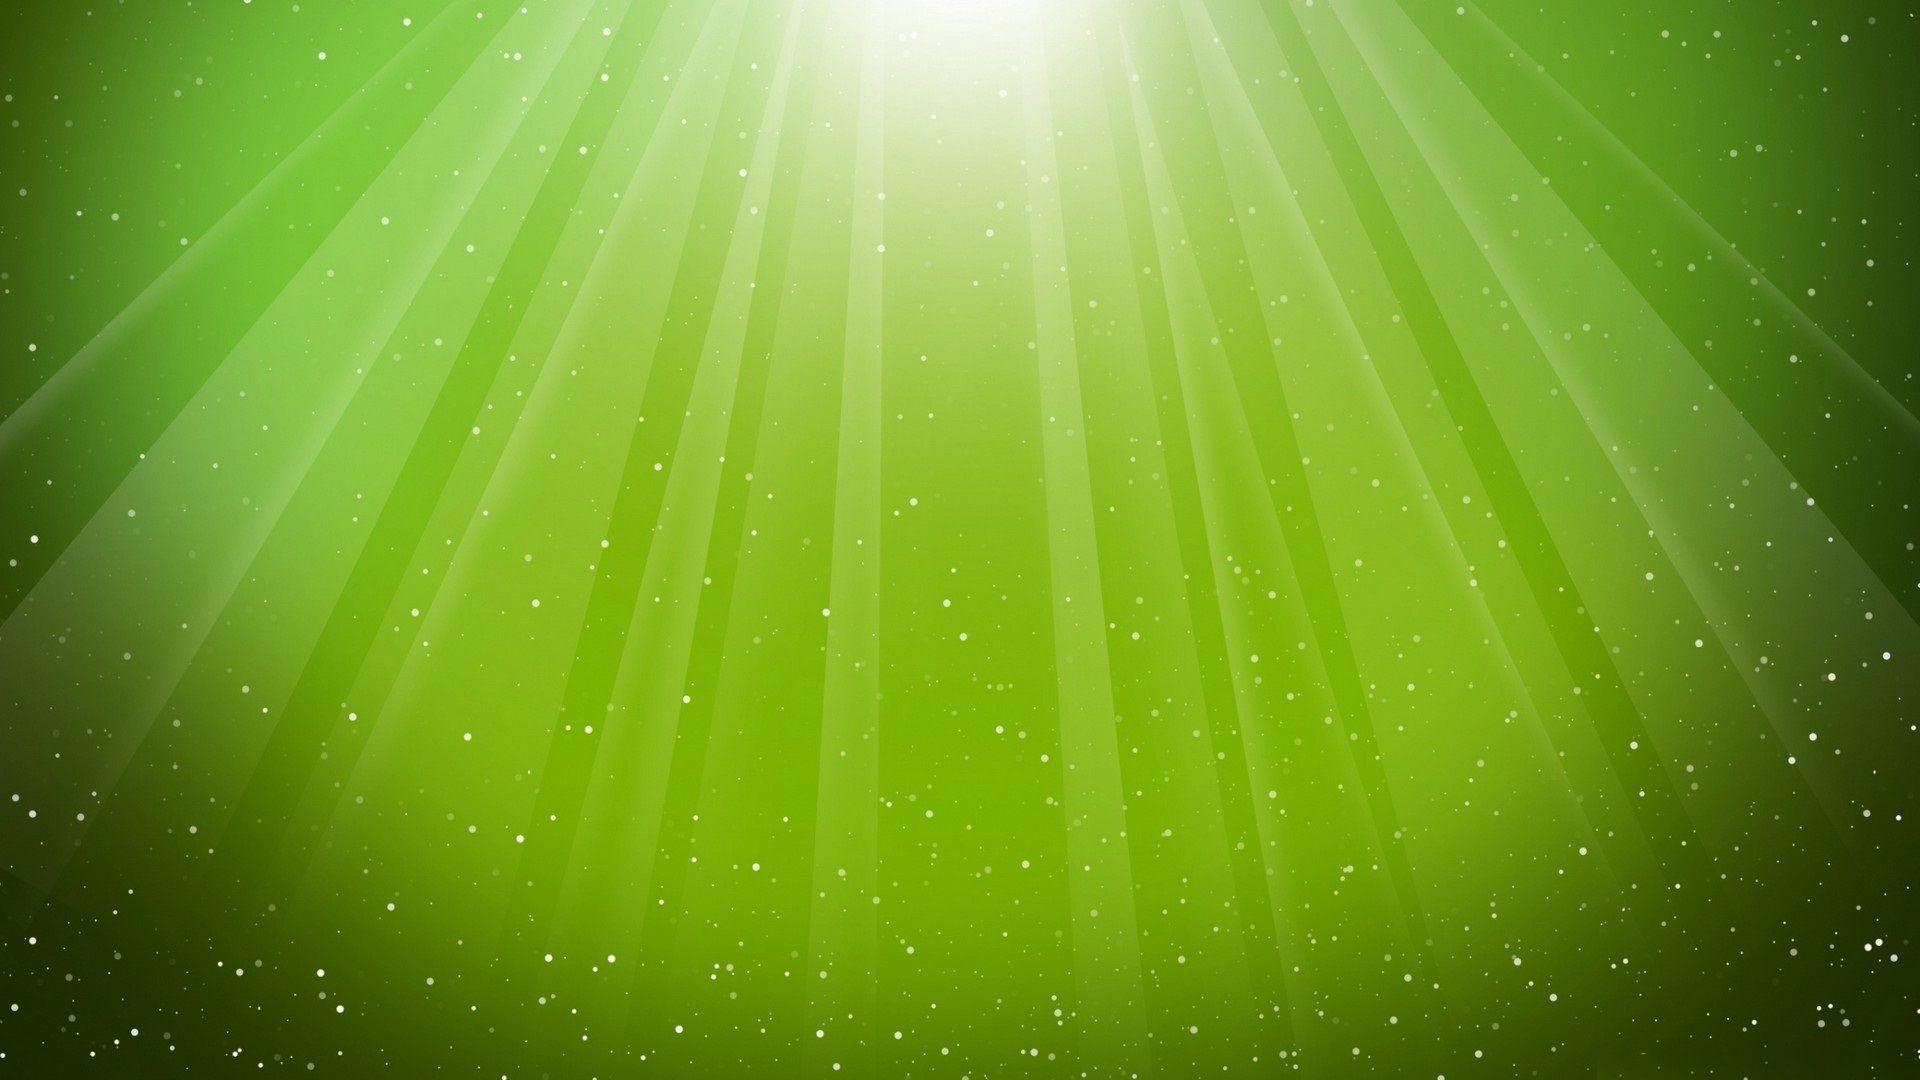 Light Green Desktop Wallpapers - Top Free Light Green Desktop